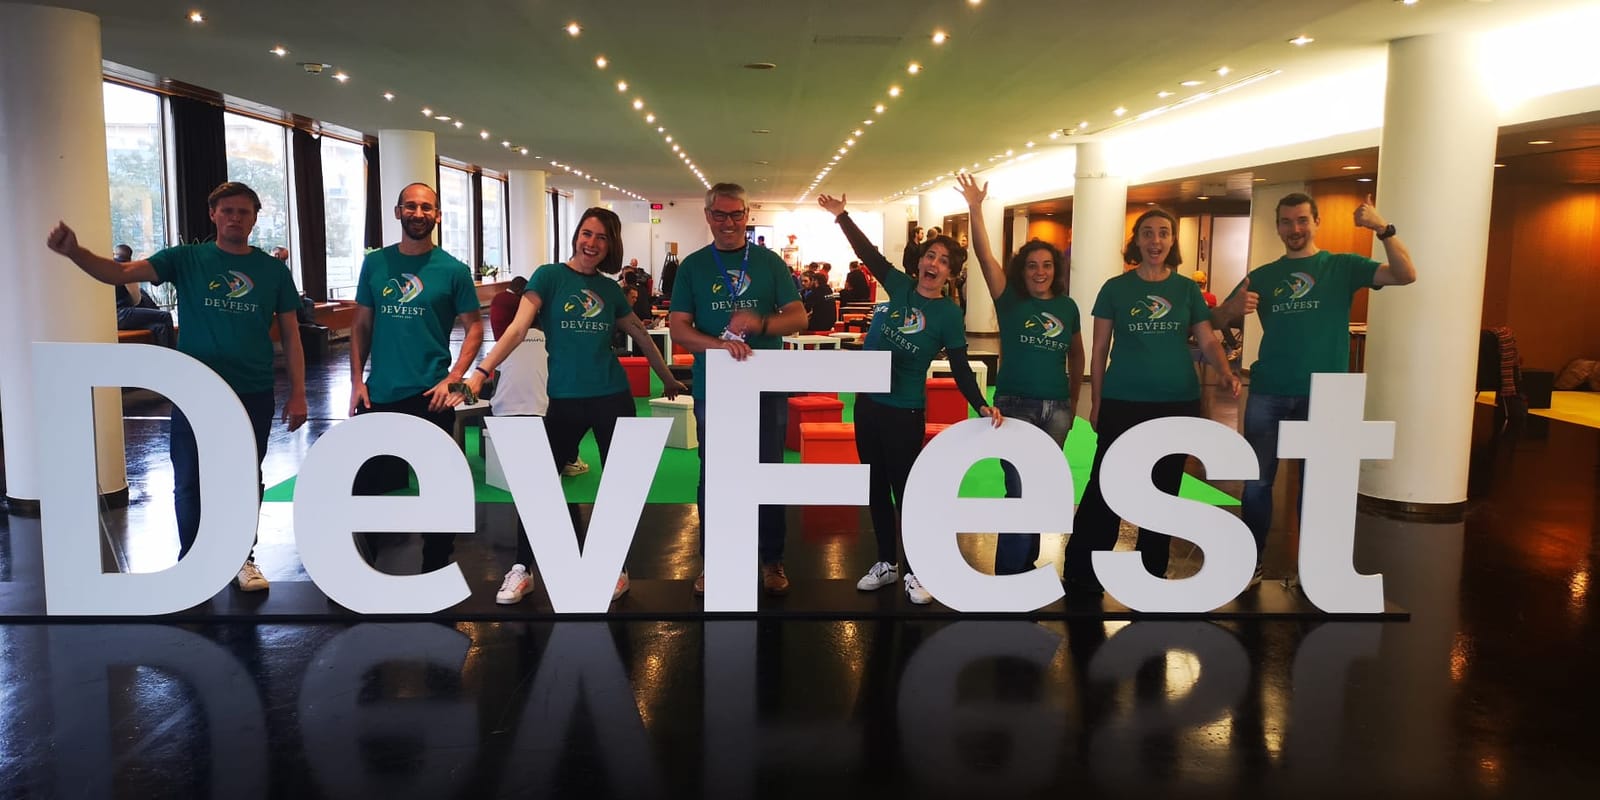 L'équipe de bénévoles DevFest Safe (8 personnes derrière des lettres géantes du DevFest)